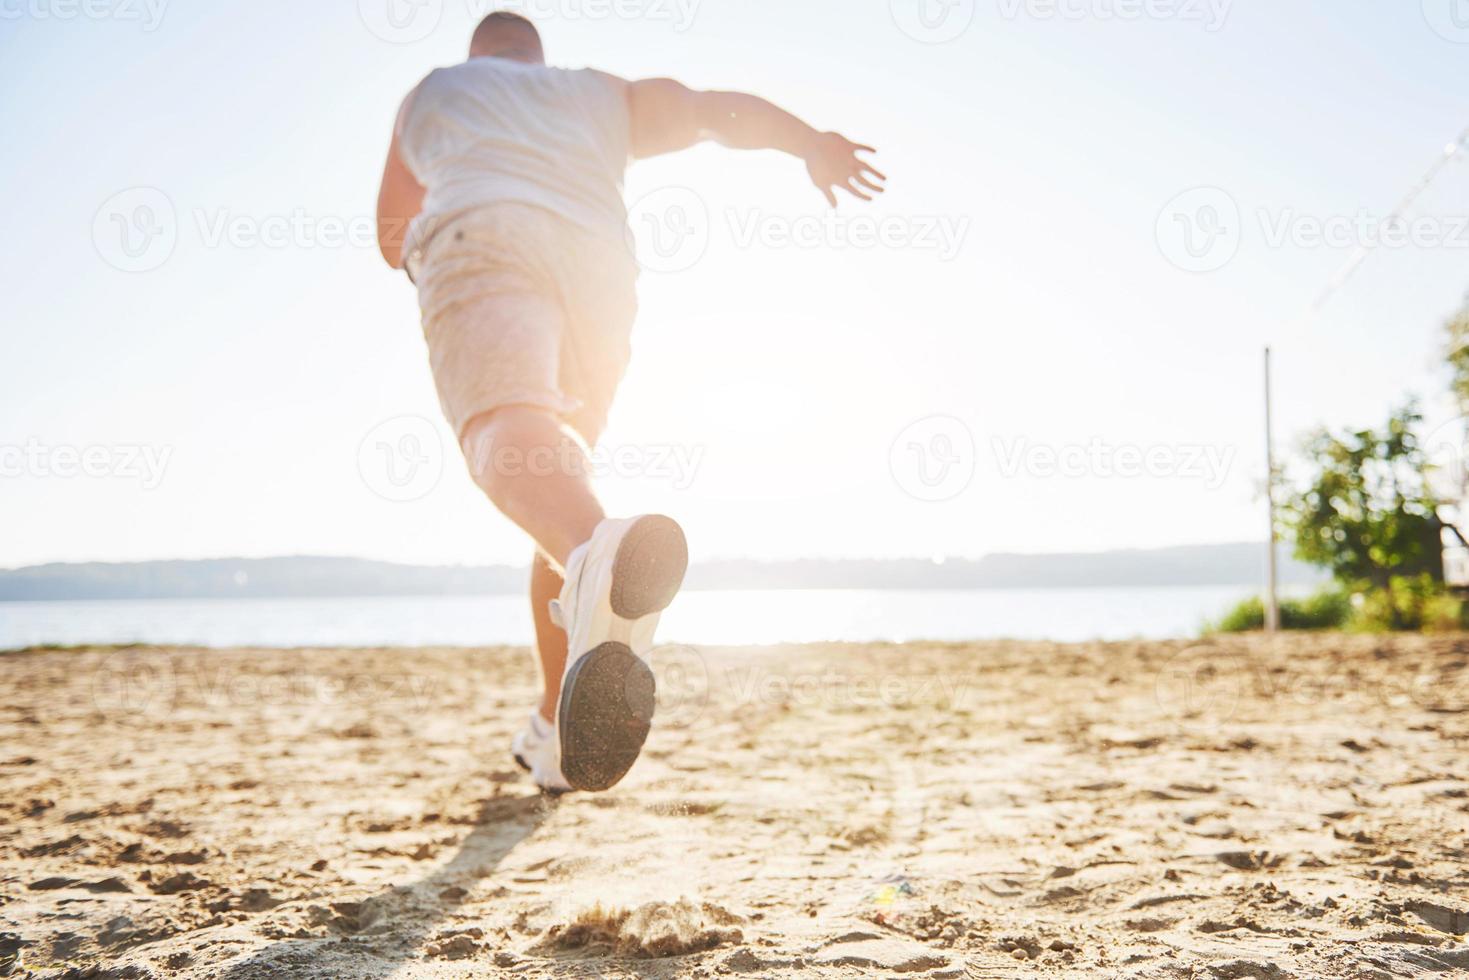 corsa campestre all'aperto nel sole estivo concetto per esercizio fisico, fitness e stile di vita sano. primo piano dei piedi di un uomo che corre nell'erba foto